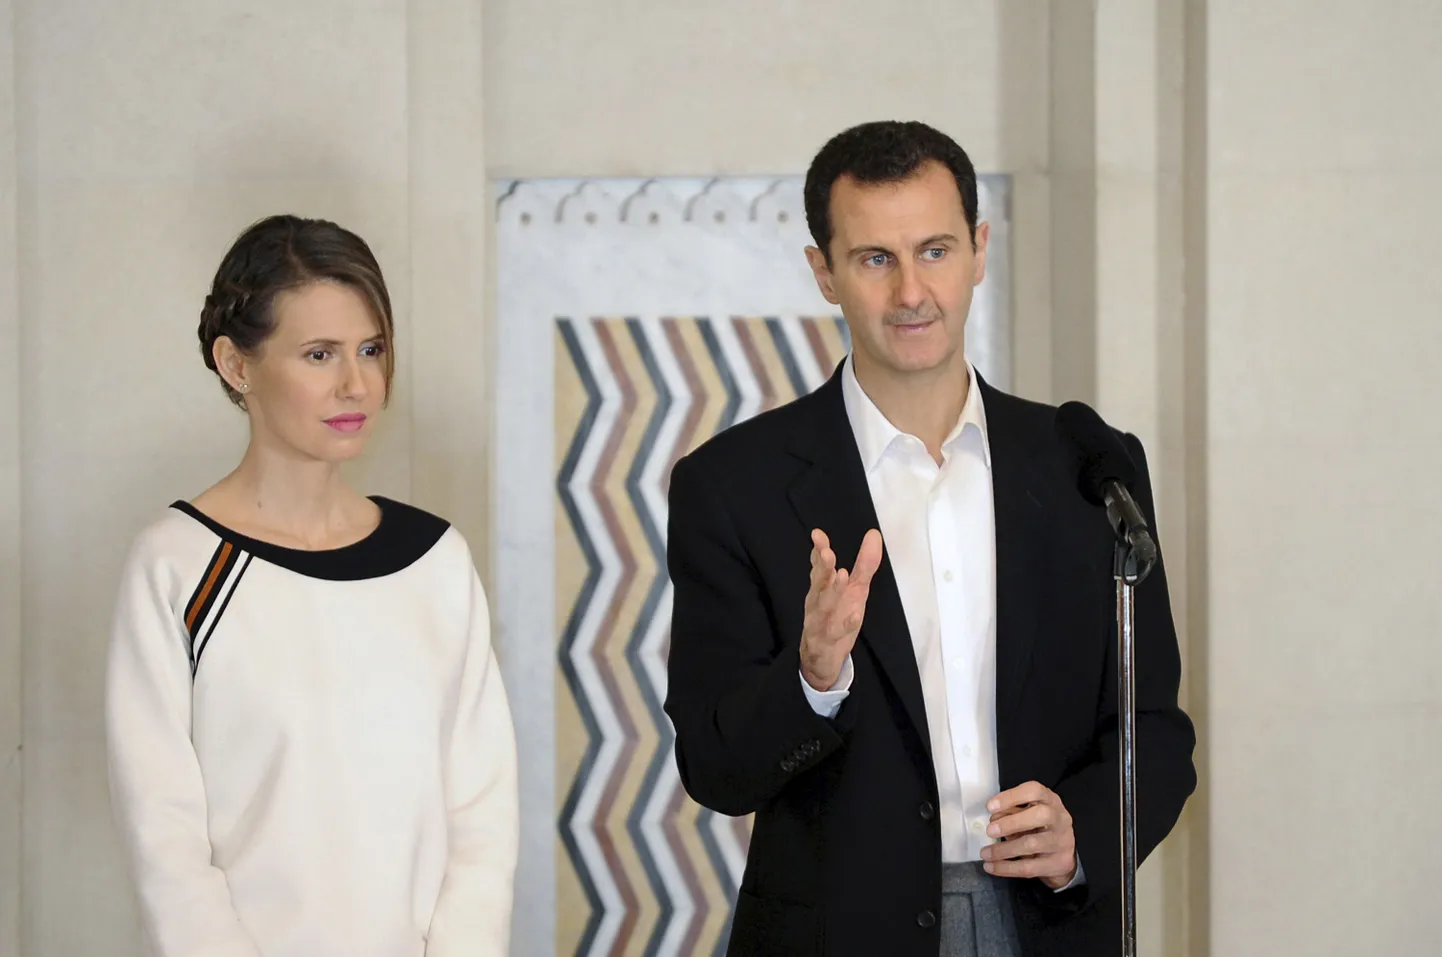 Süüria president Bashar al-Assad koos abikaasa Asmaga.